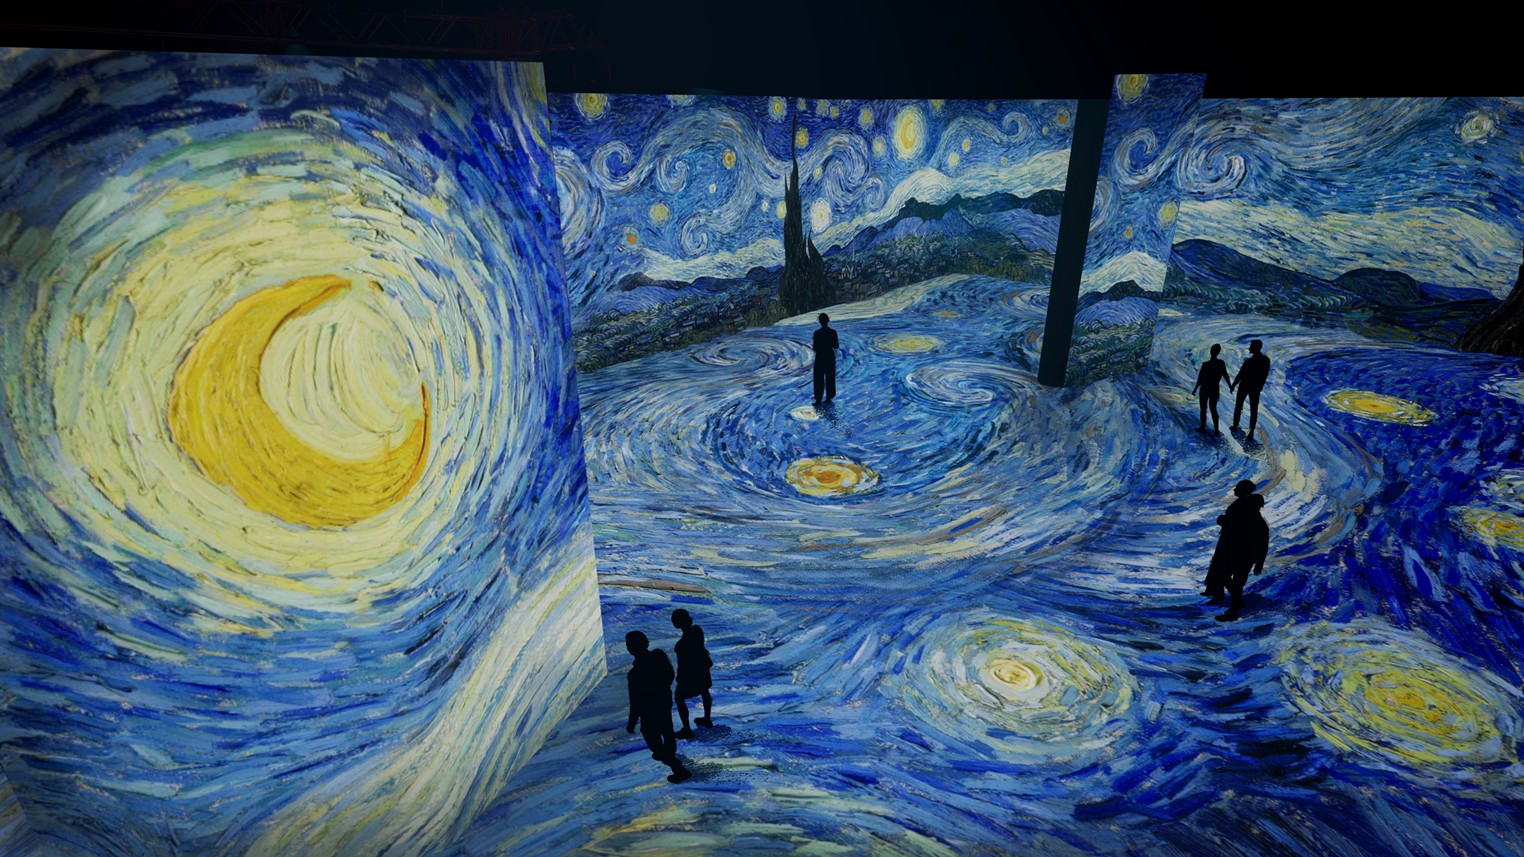 The Van Gogh Exhibit in New York Is Having a Series of Weed Nights